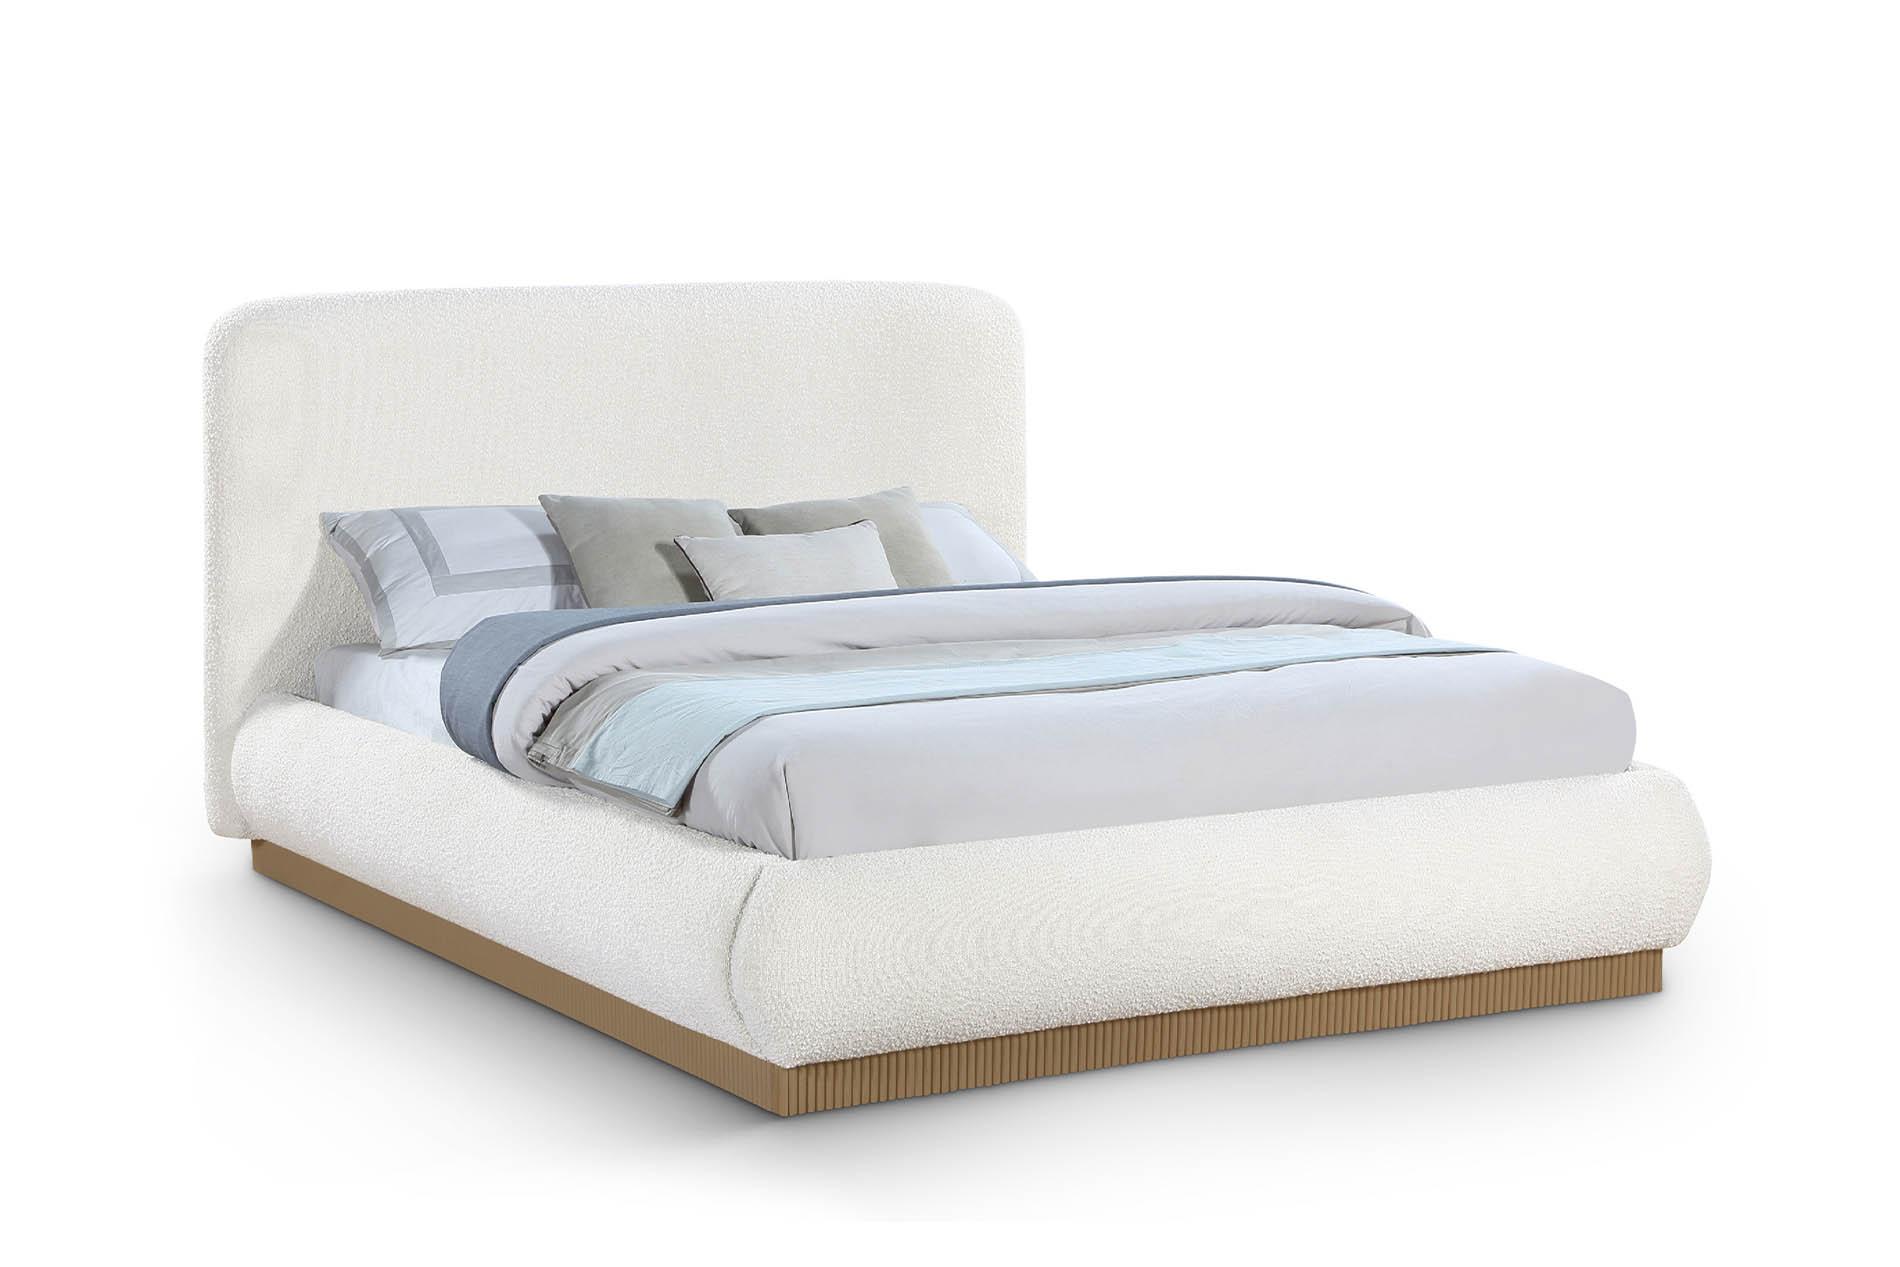 Contemporary, Modern Platform Bed B1275Cream-Q B1275Cream-Q in Cream 